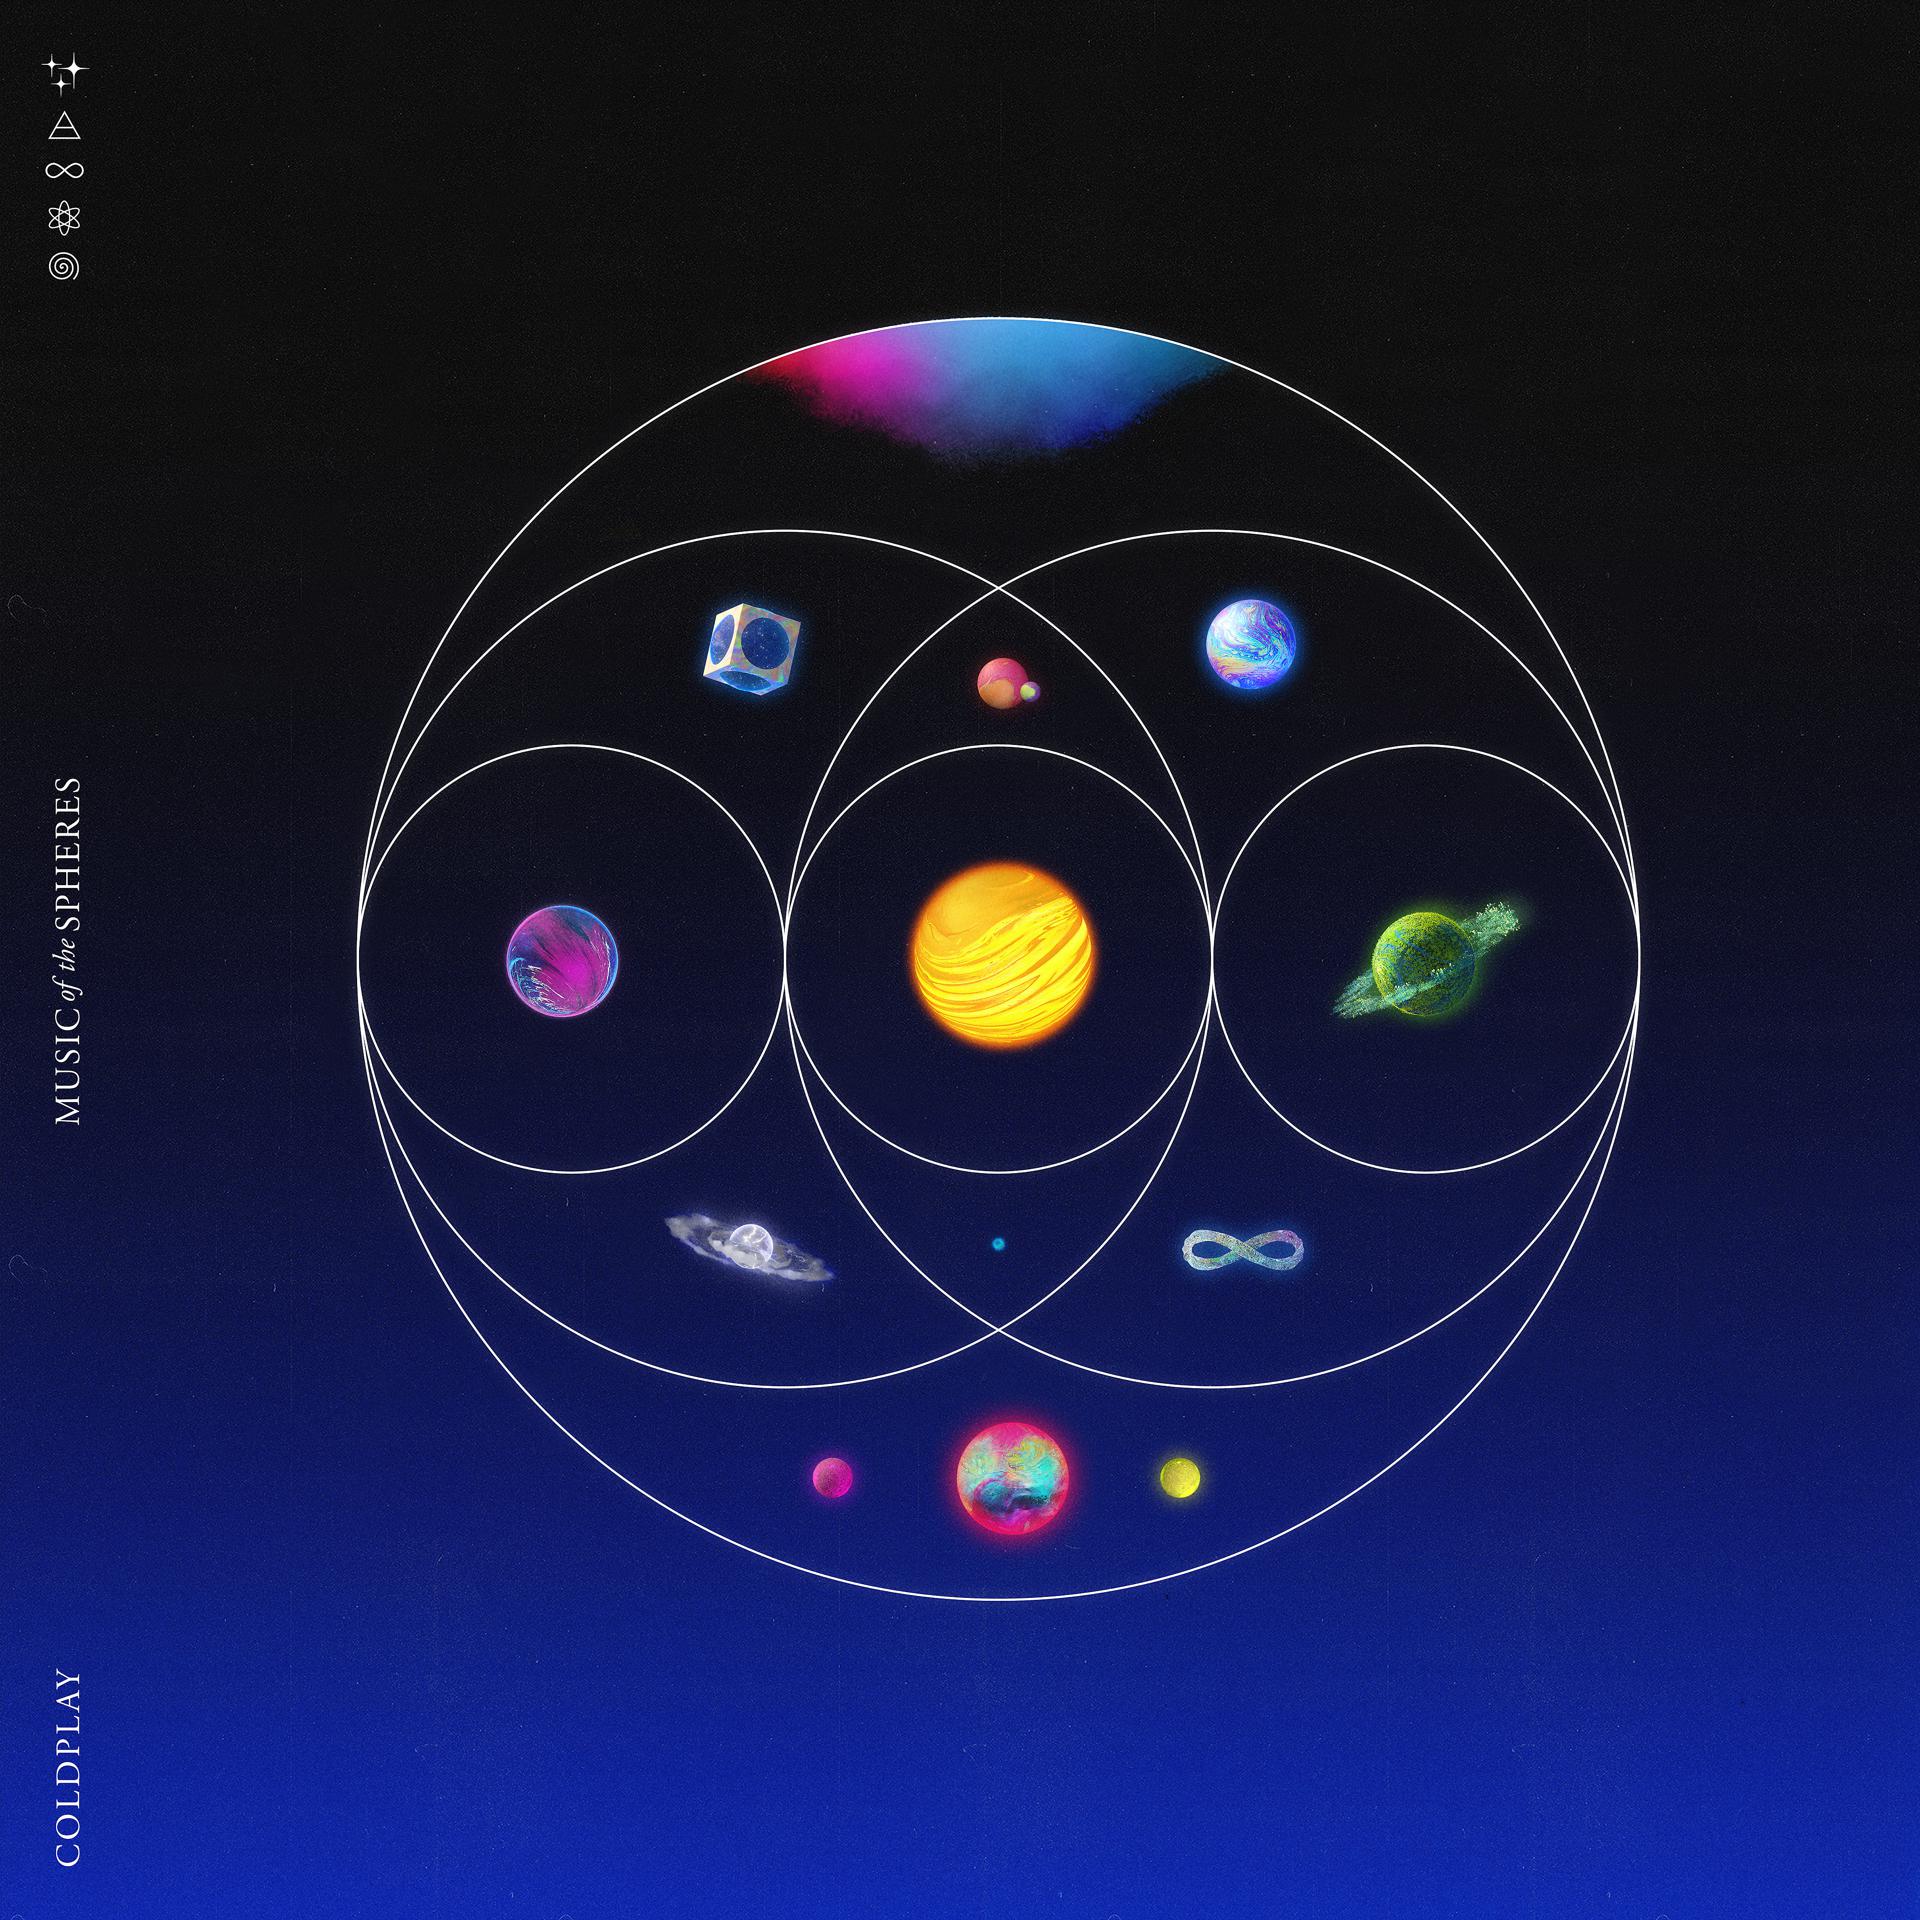 Постер альбома Music Of The Spheres